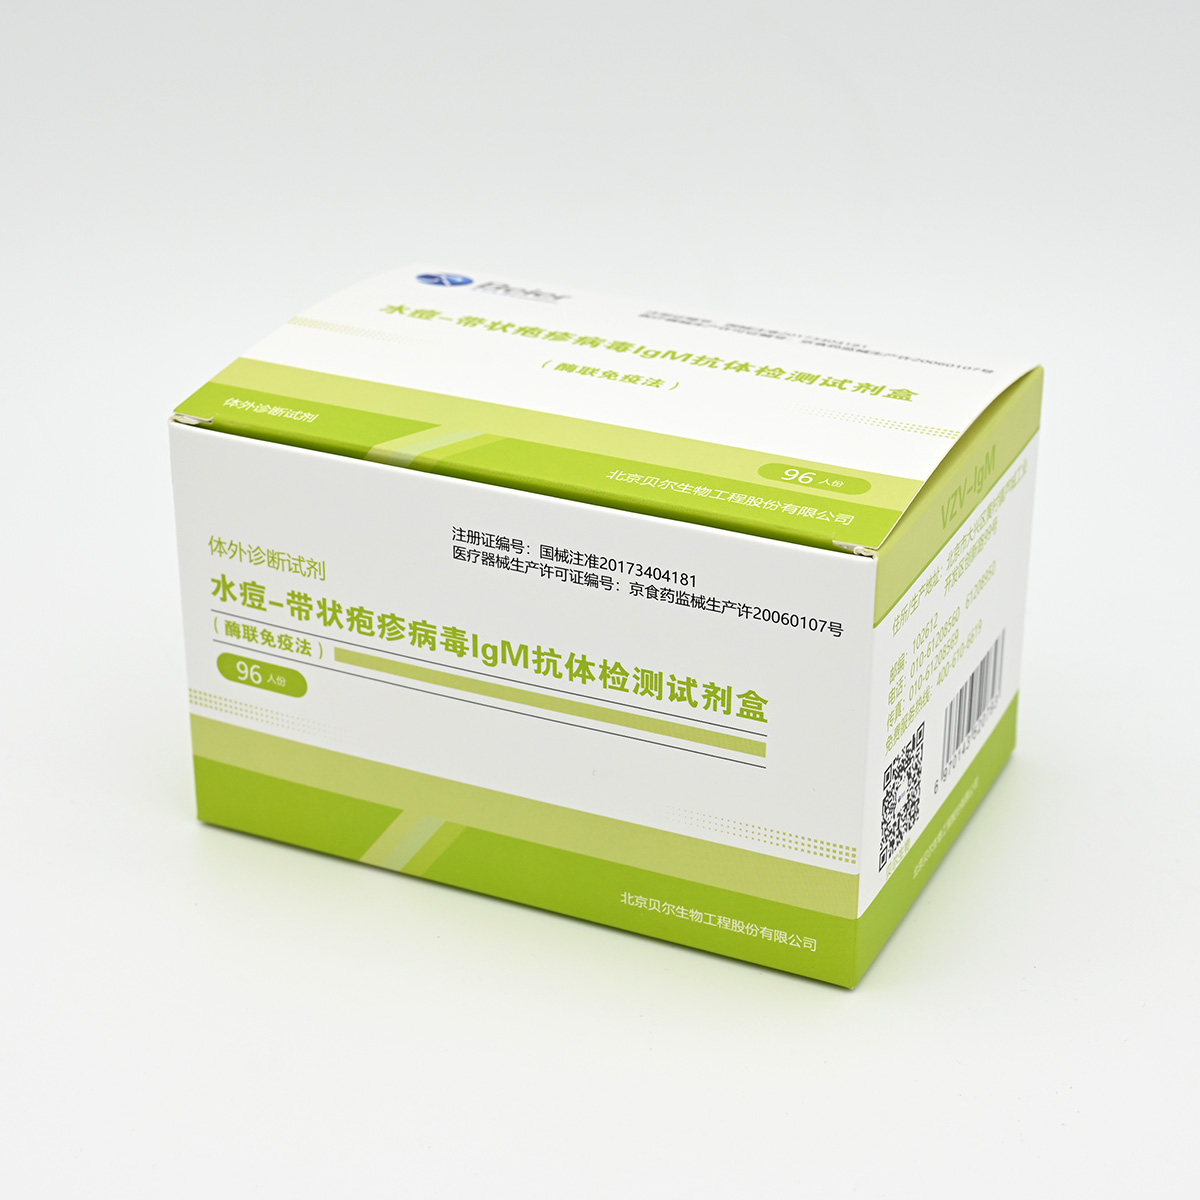 【贝尔】水痘-带状疱疹病毒IgM抗体检测试剂盒(酶联免疫法)